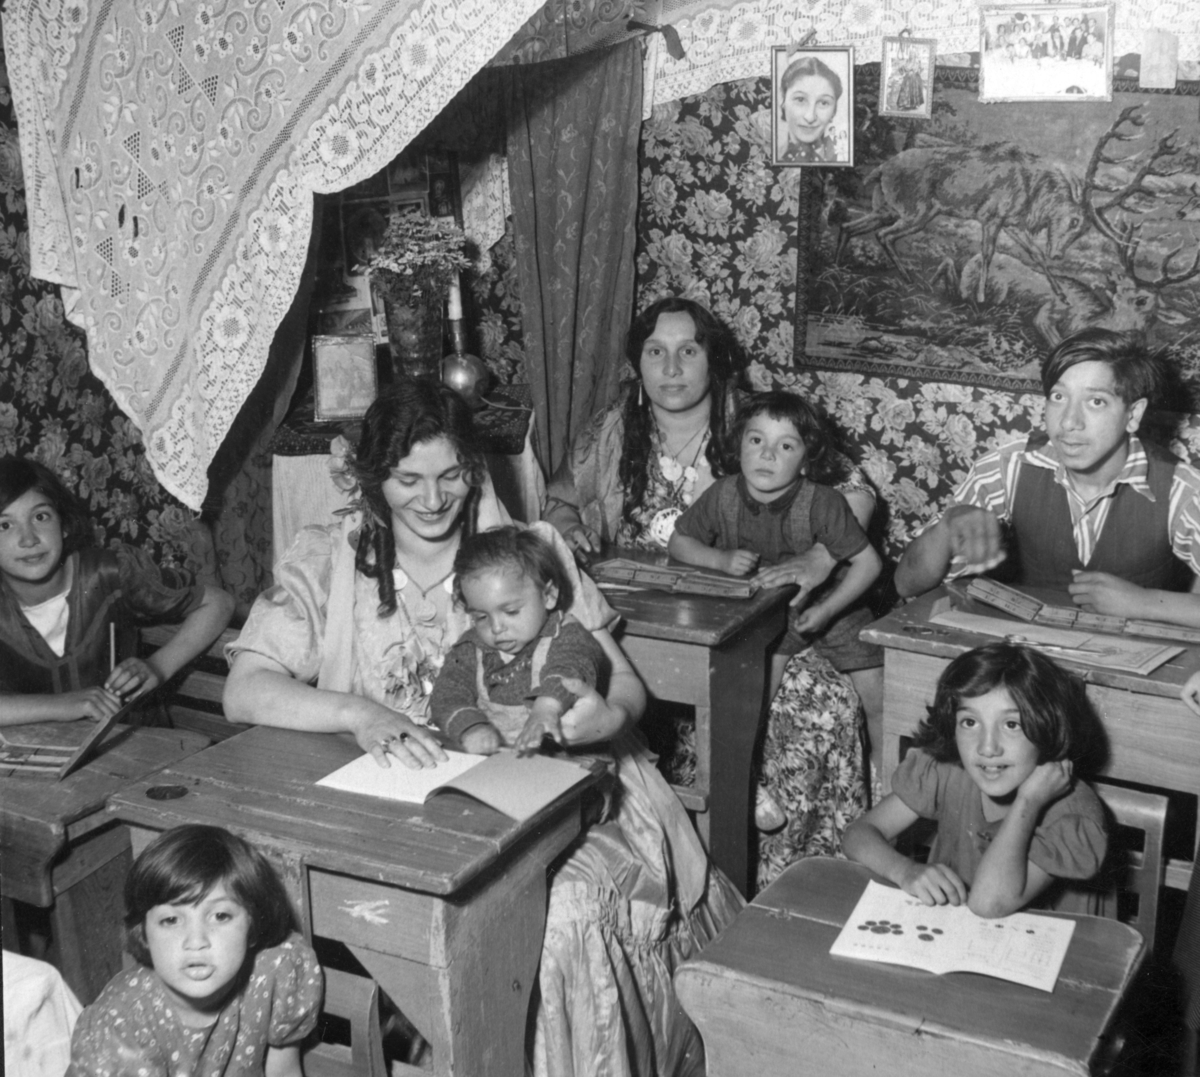 Romska barn och vuxna går i sommarskola 1943. I bänkraderna sitter barn och vuxna läsandes böcker. I bakgrunden syns draperier.